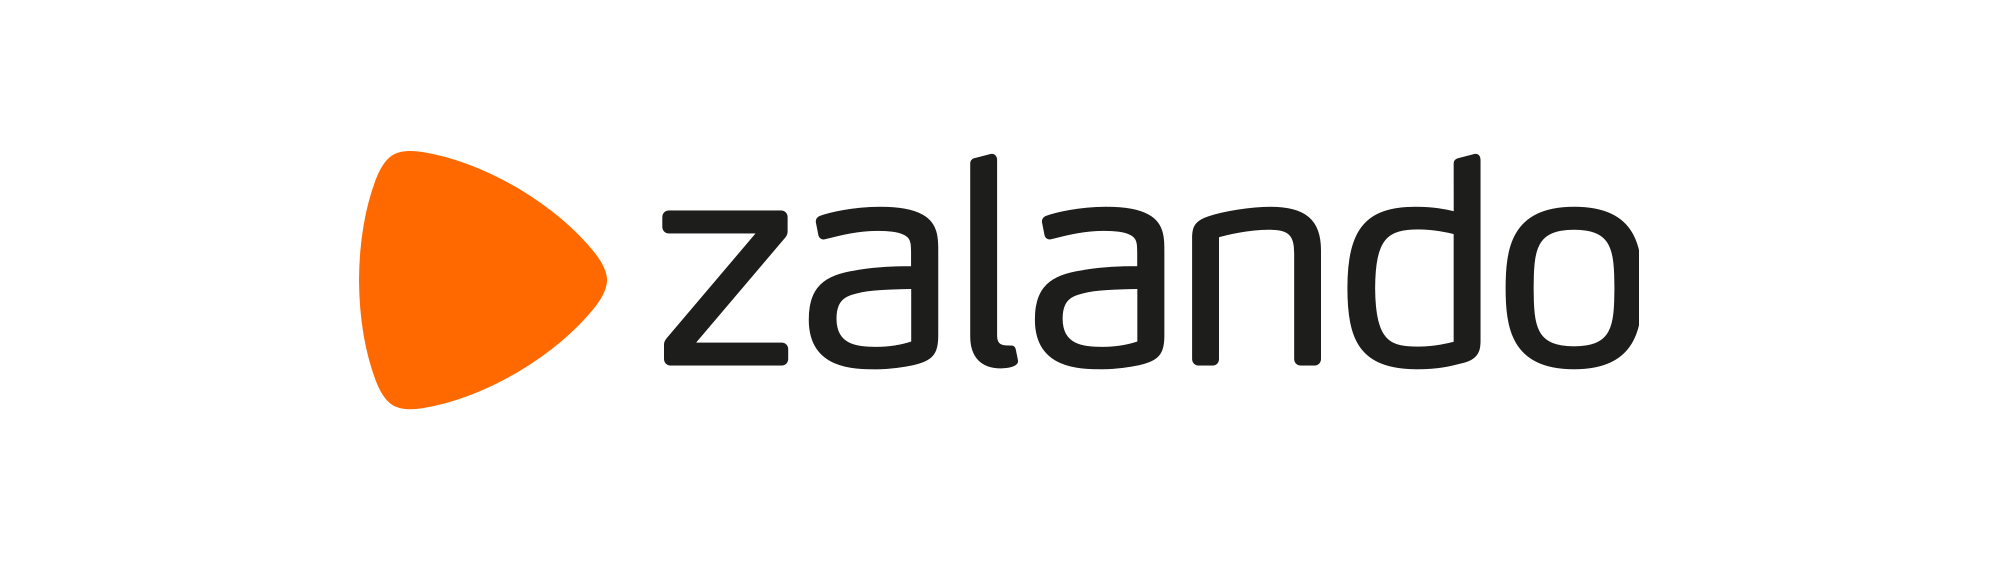 Dárkový poukaz do e-shopu Zalando umožňuje nakoupit cokoliv z nabídky Zalando.